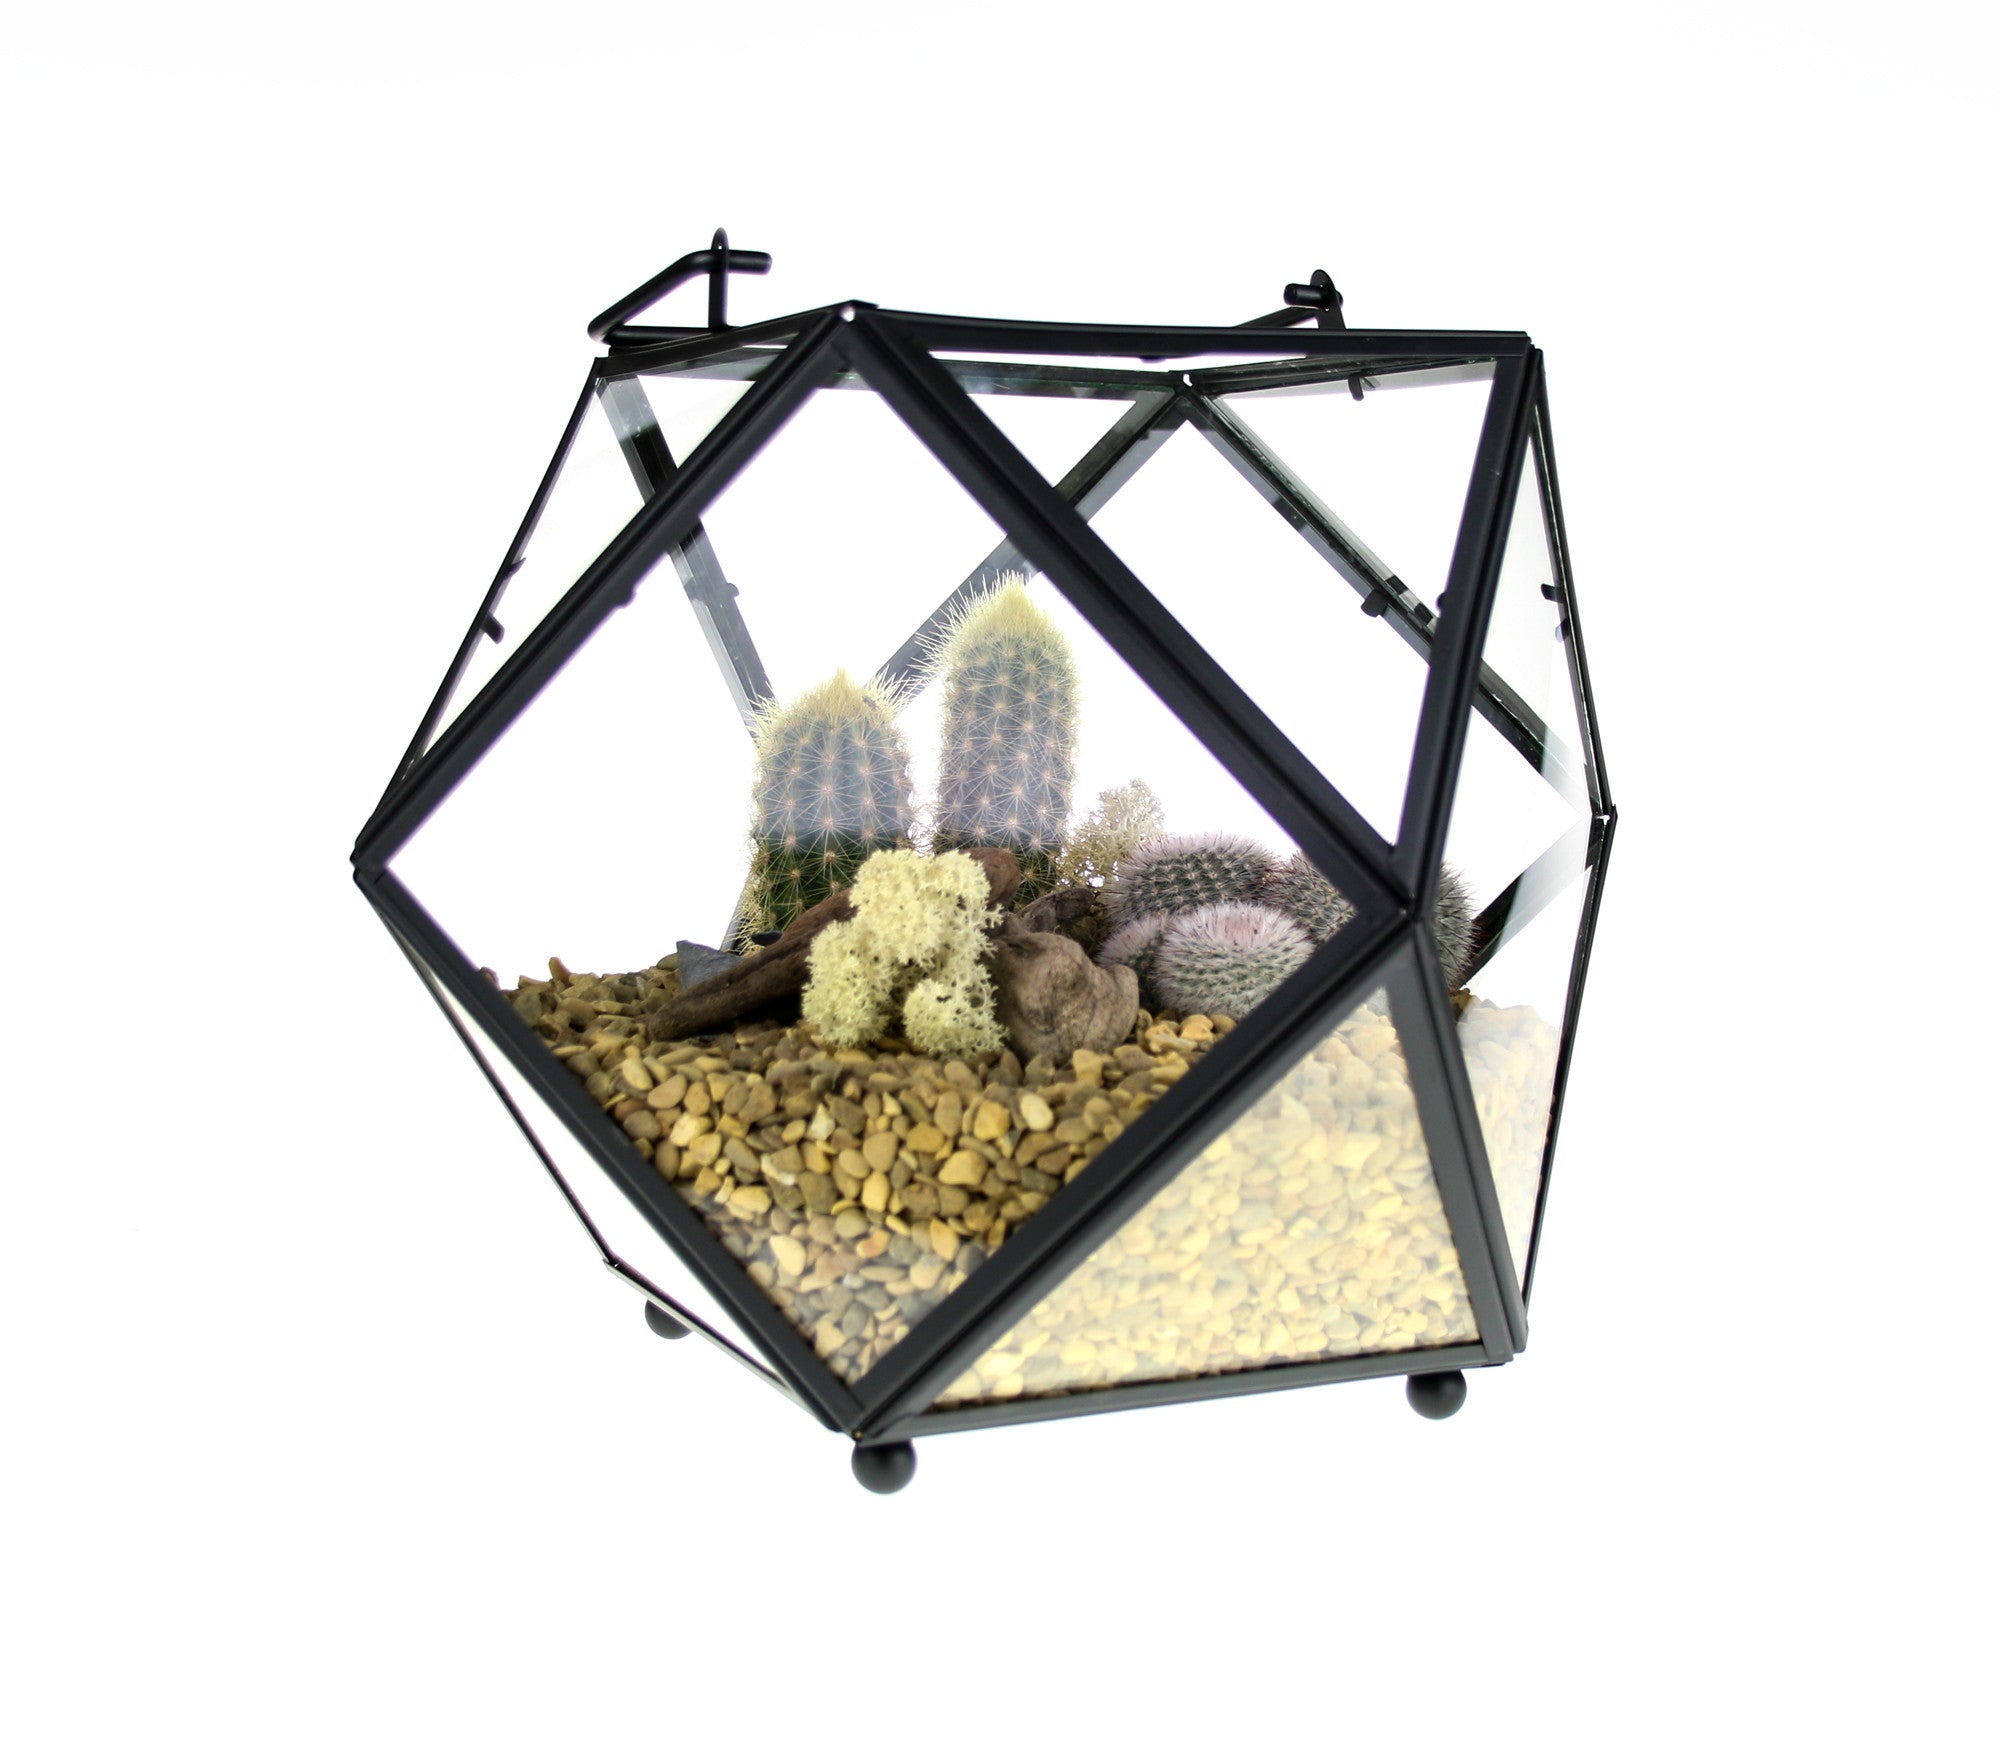 Geometric Glass and Copper Terrarium